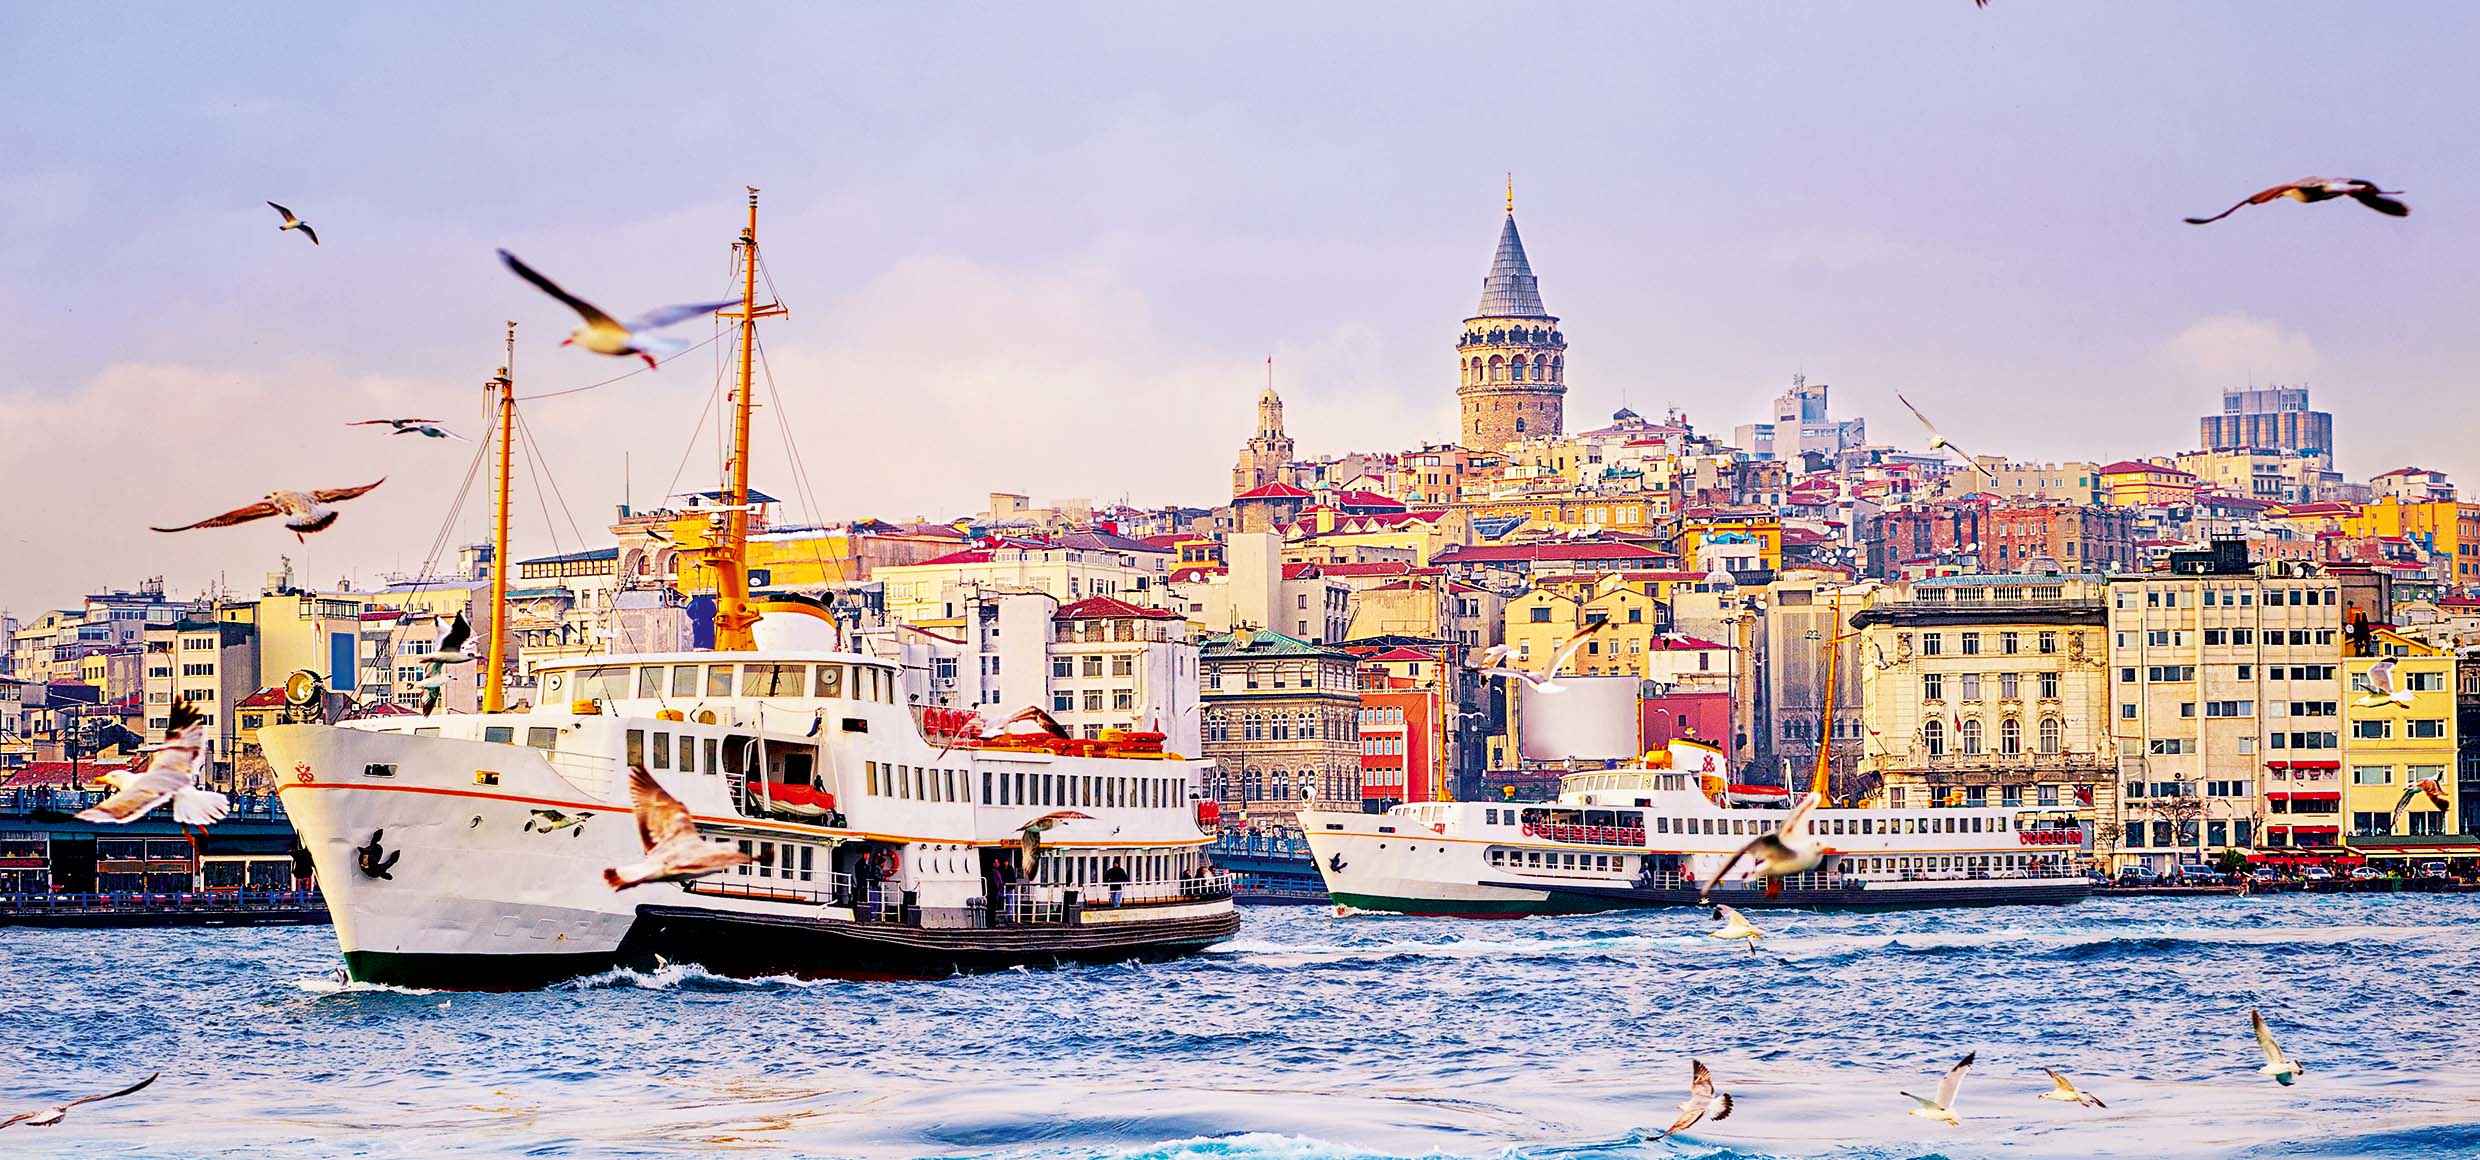 Türkei entdecken mit ZEIT REISEN | Reiseprogramm der ZEIT